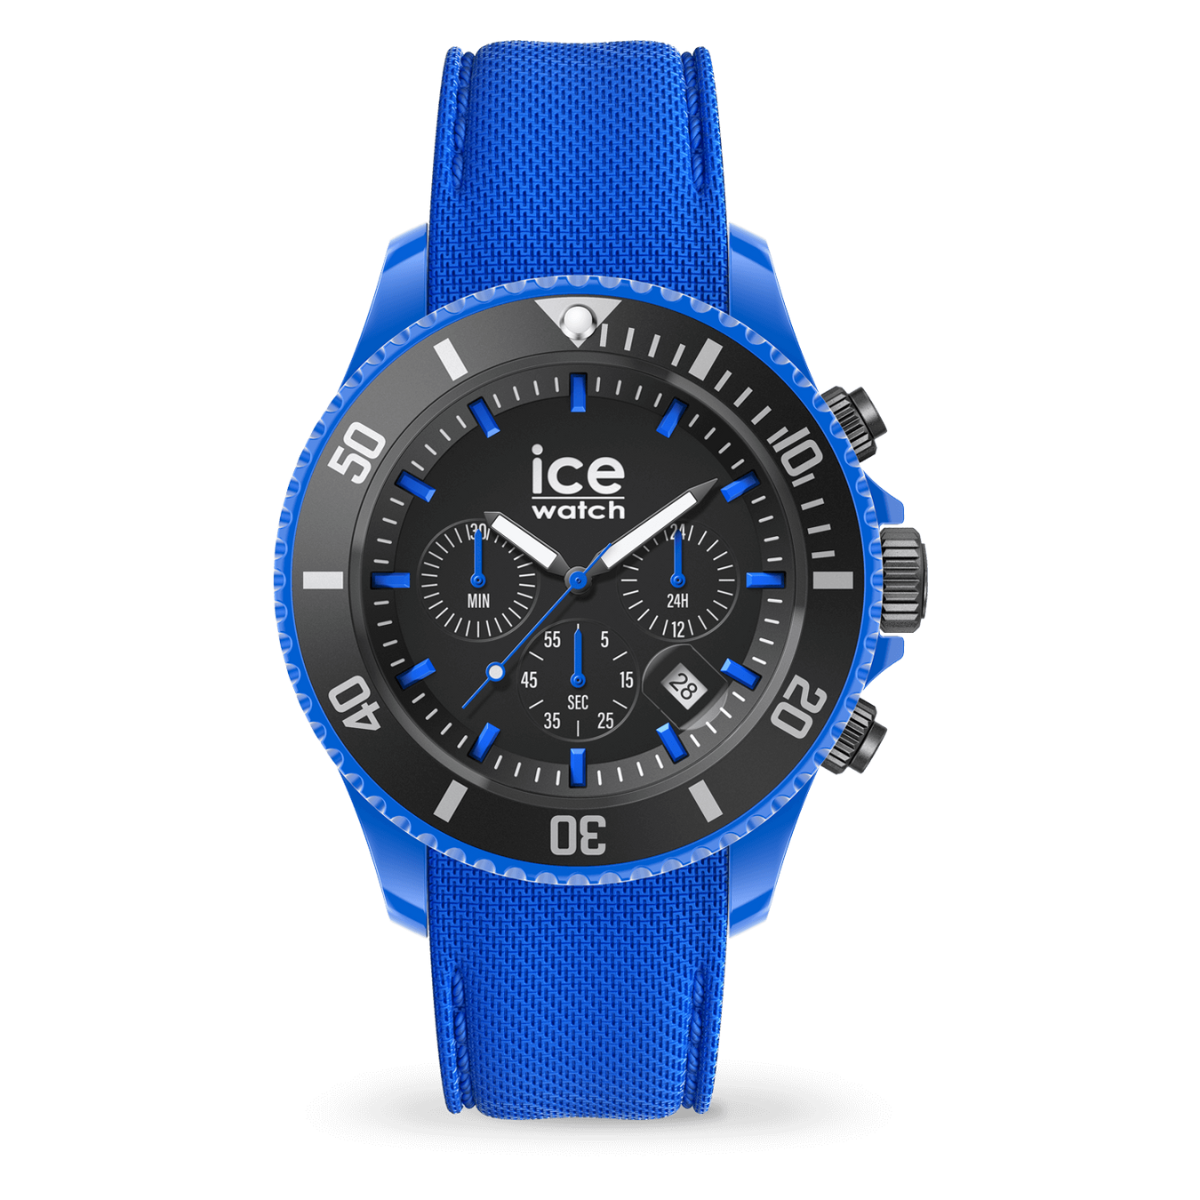 Montre ICE WATCH bleu 019840